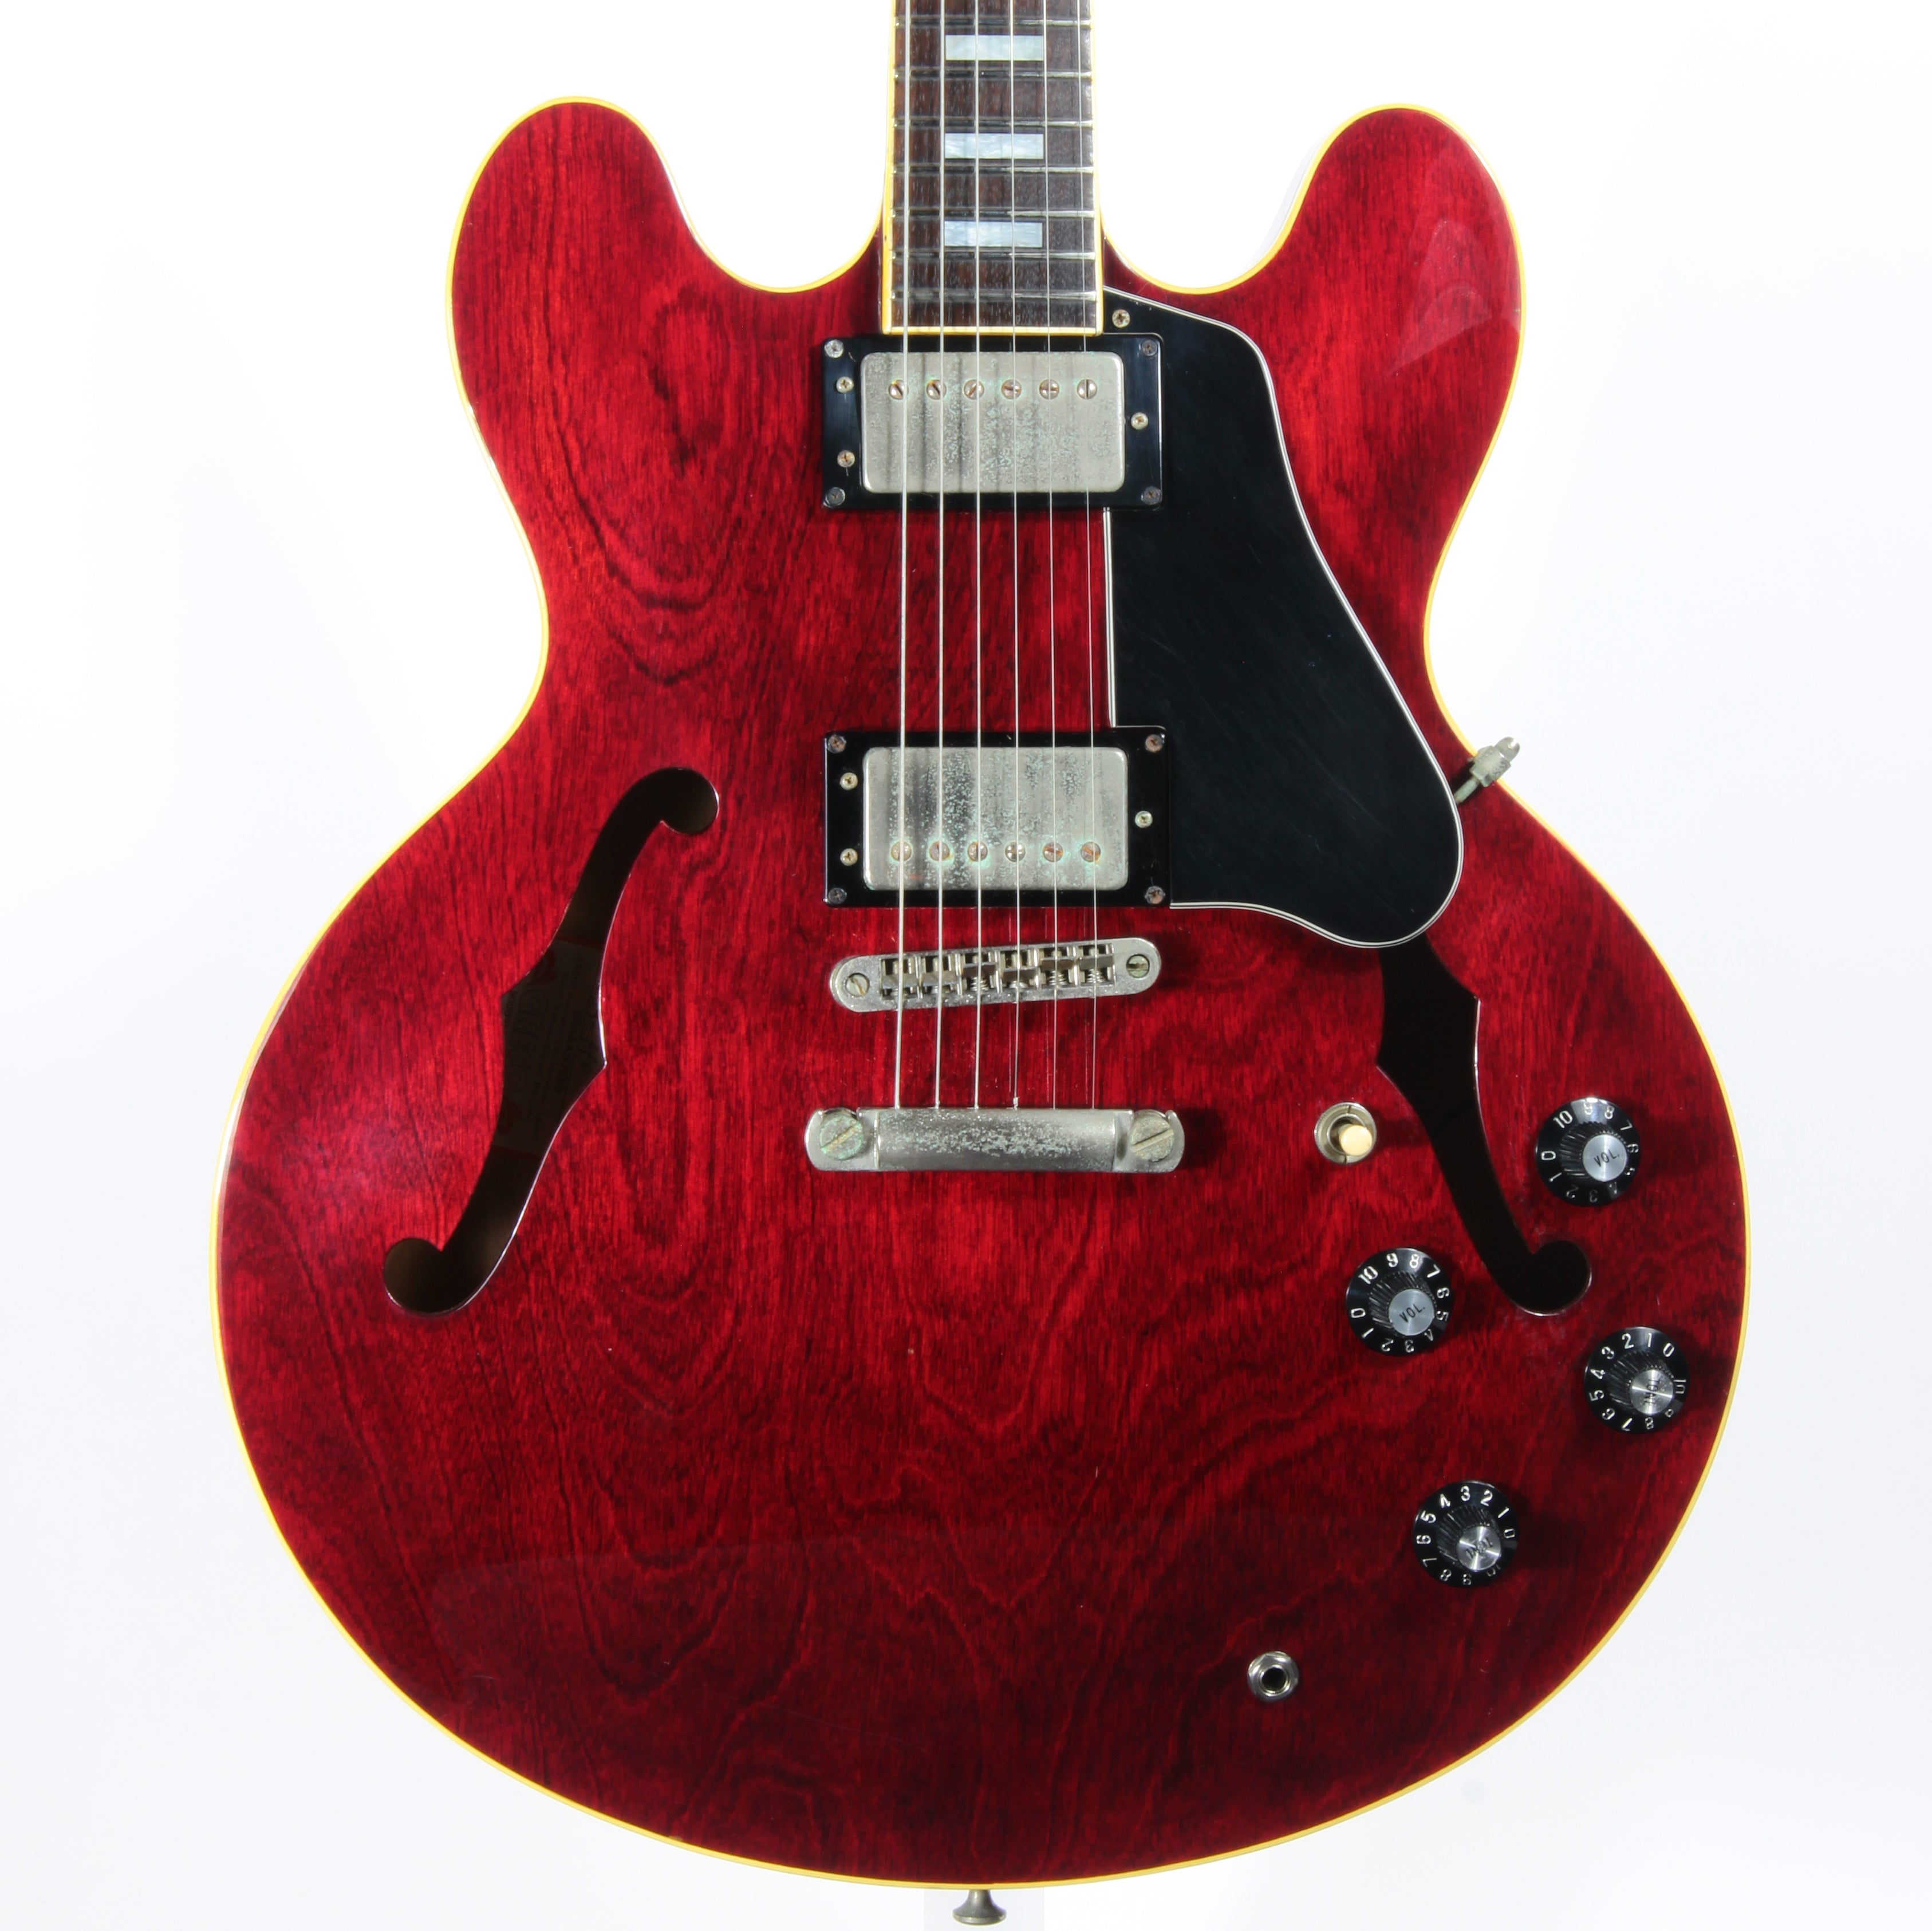 *SOLD*  1979 Greco SA-550 Vintage Semi-Hollowbody Guitar Cherry Red ES-335 - MIJ Japan Fujigen